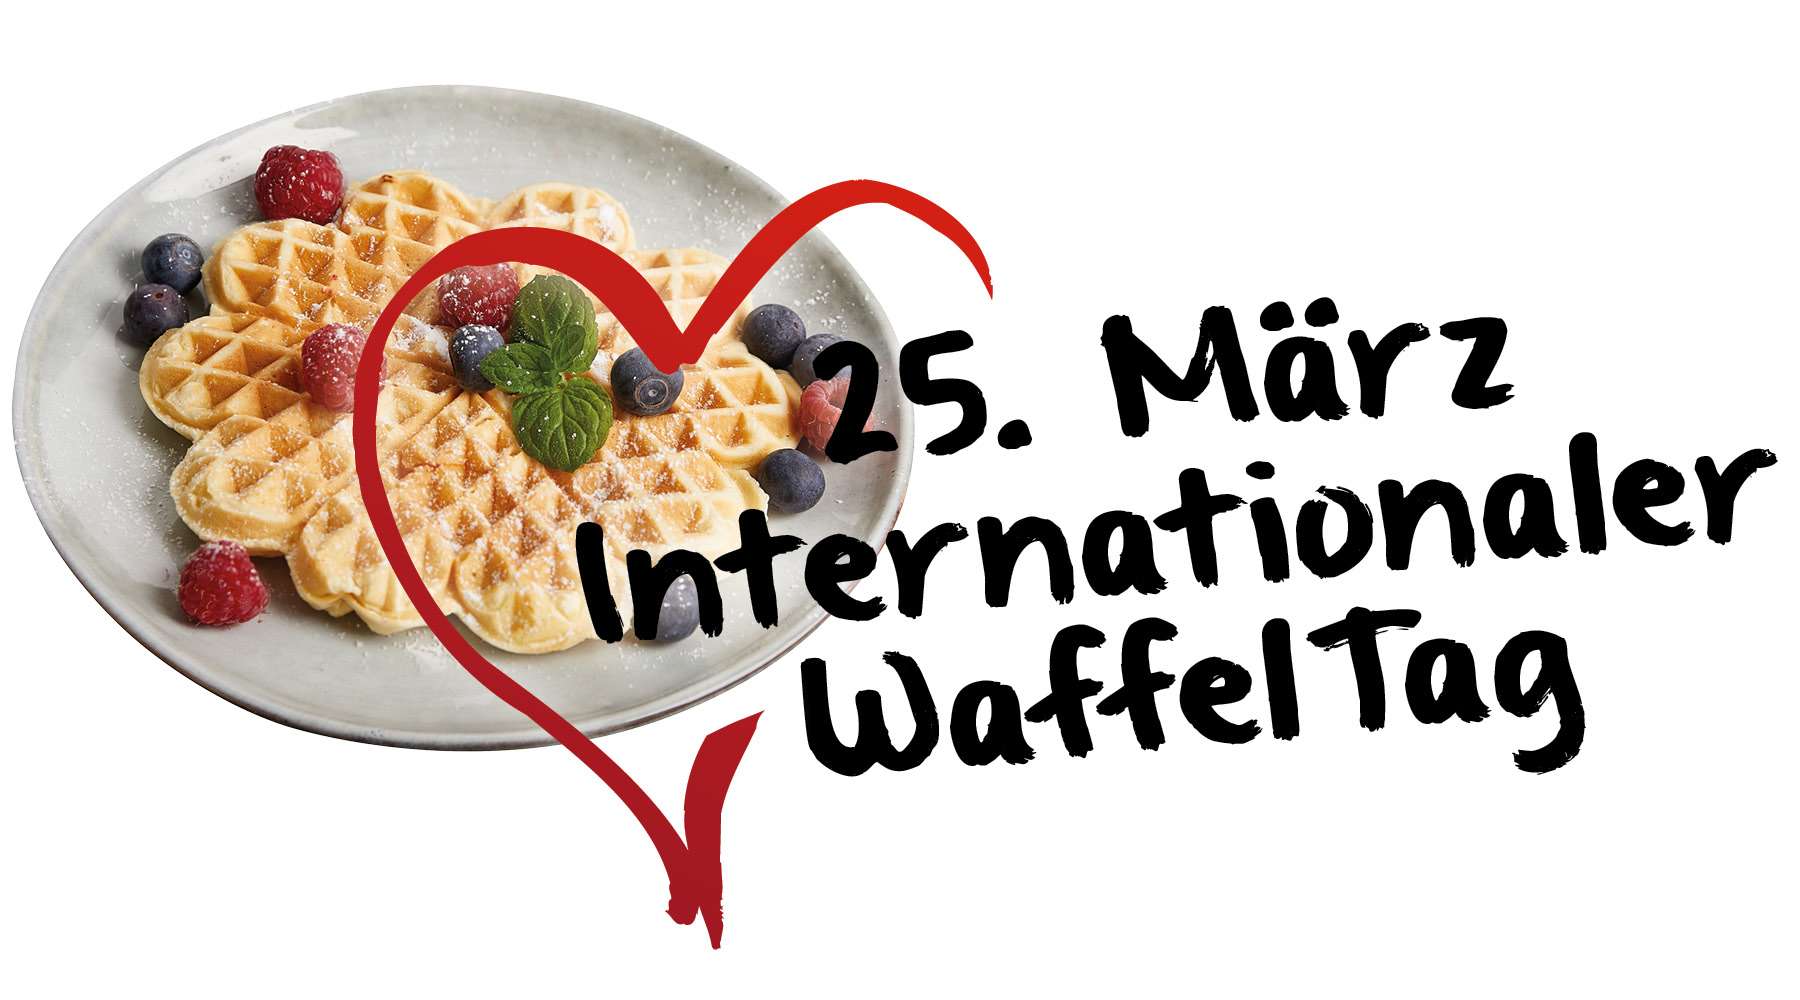 Das Bild zeigt das Logo 25. März Internationaler Waffeltag mit einem gezeichneten Herz und im Hintergrund einen Teller mit einer Herzwaffel. 